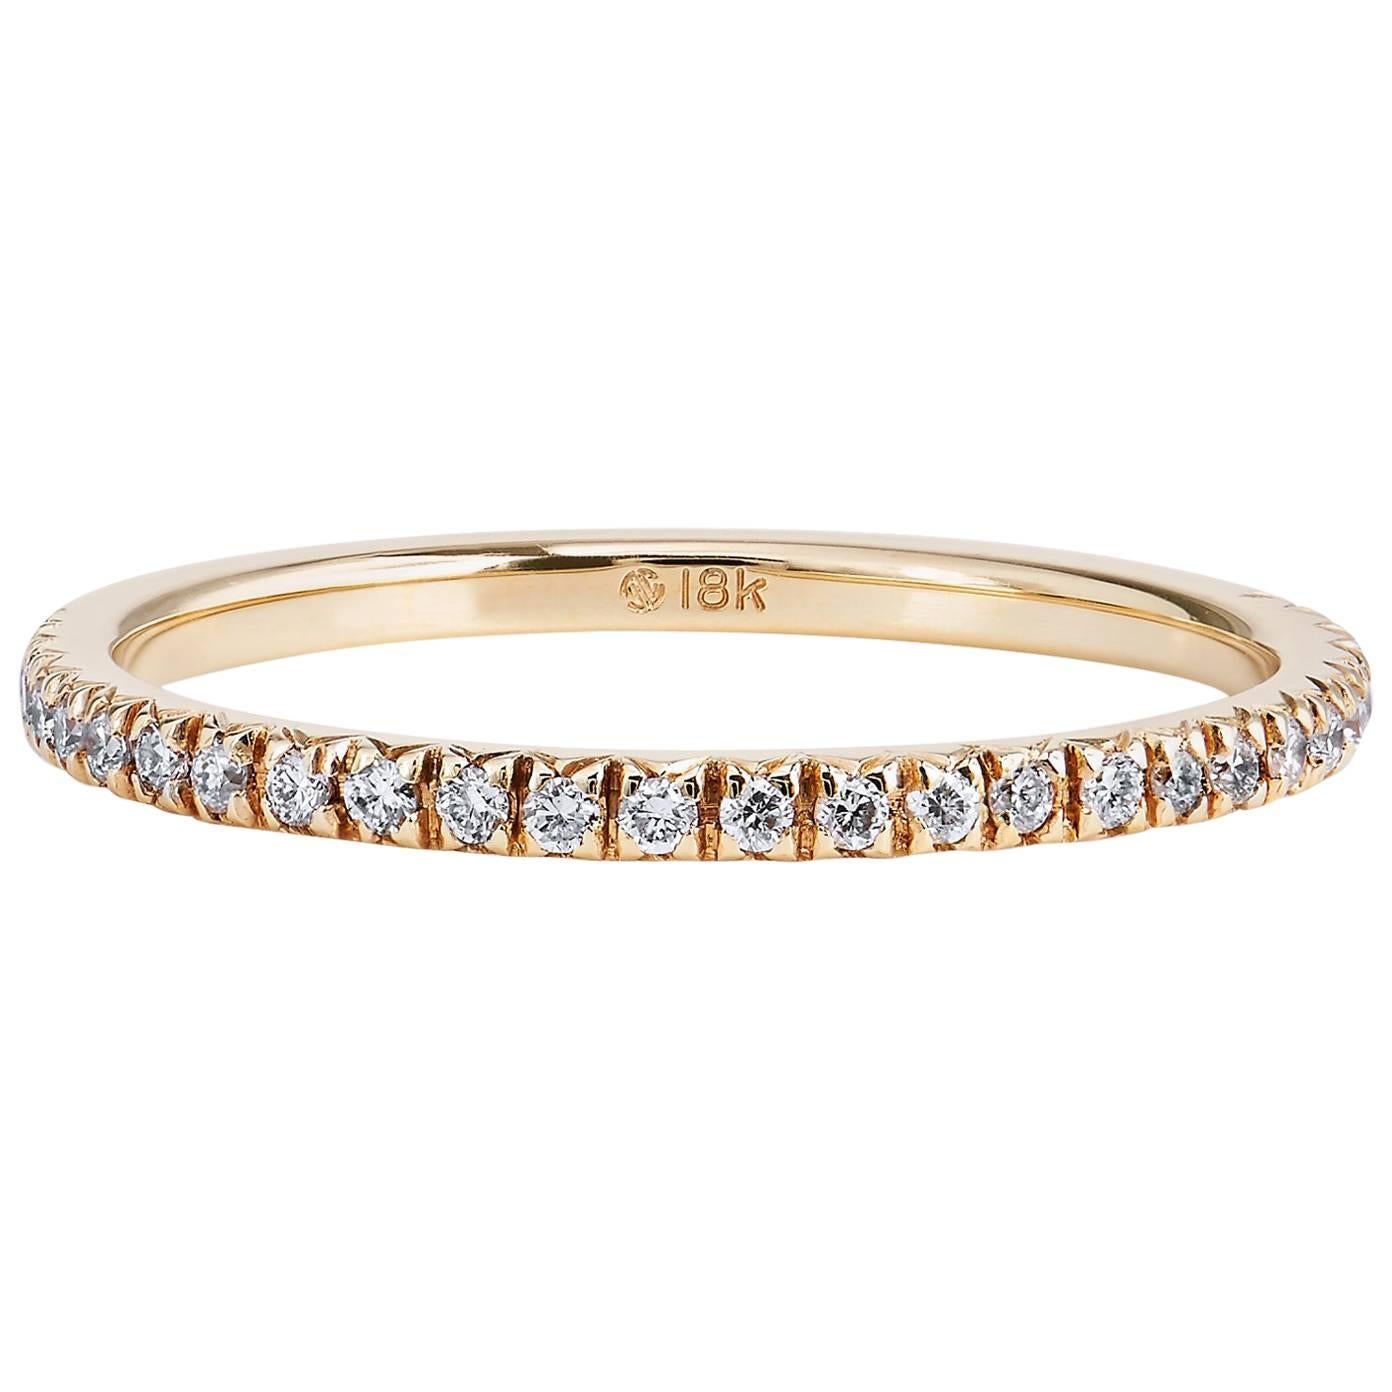 0.14 Carat Diamond 18 Karat Yellow Gold Band Ring